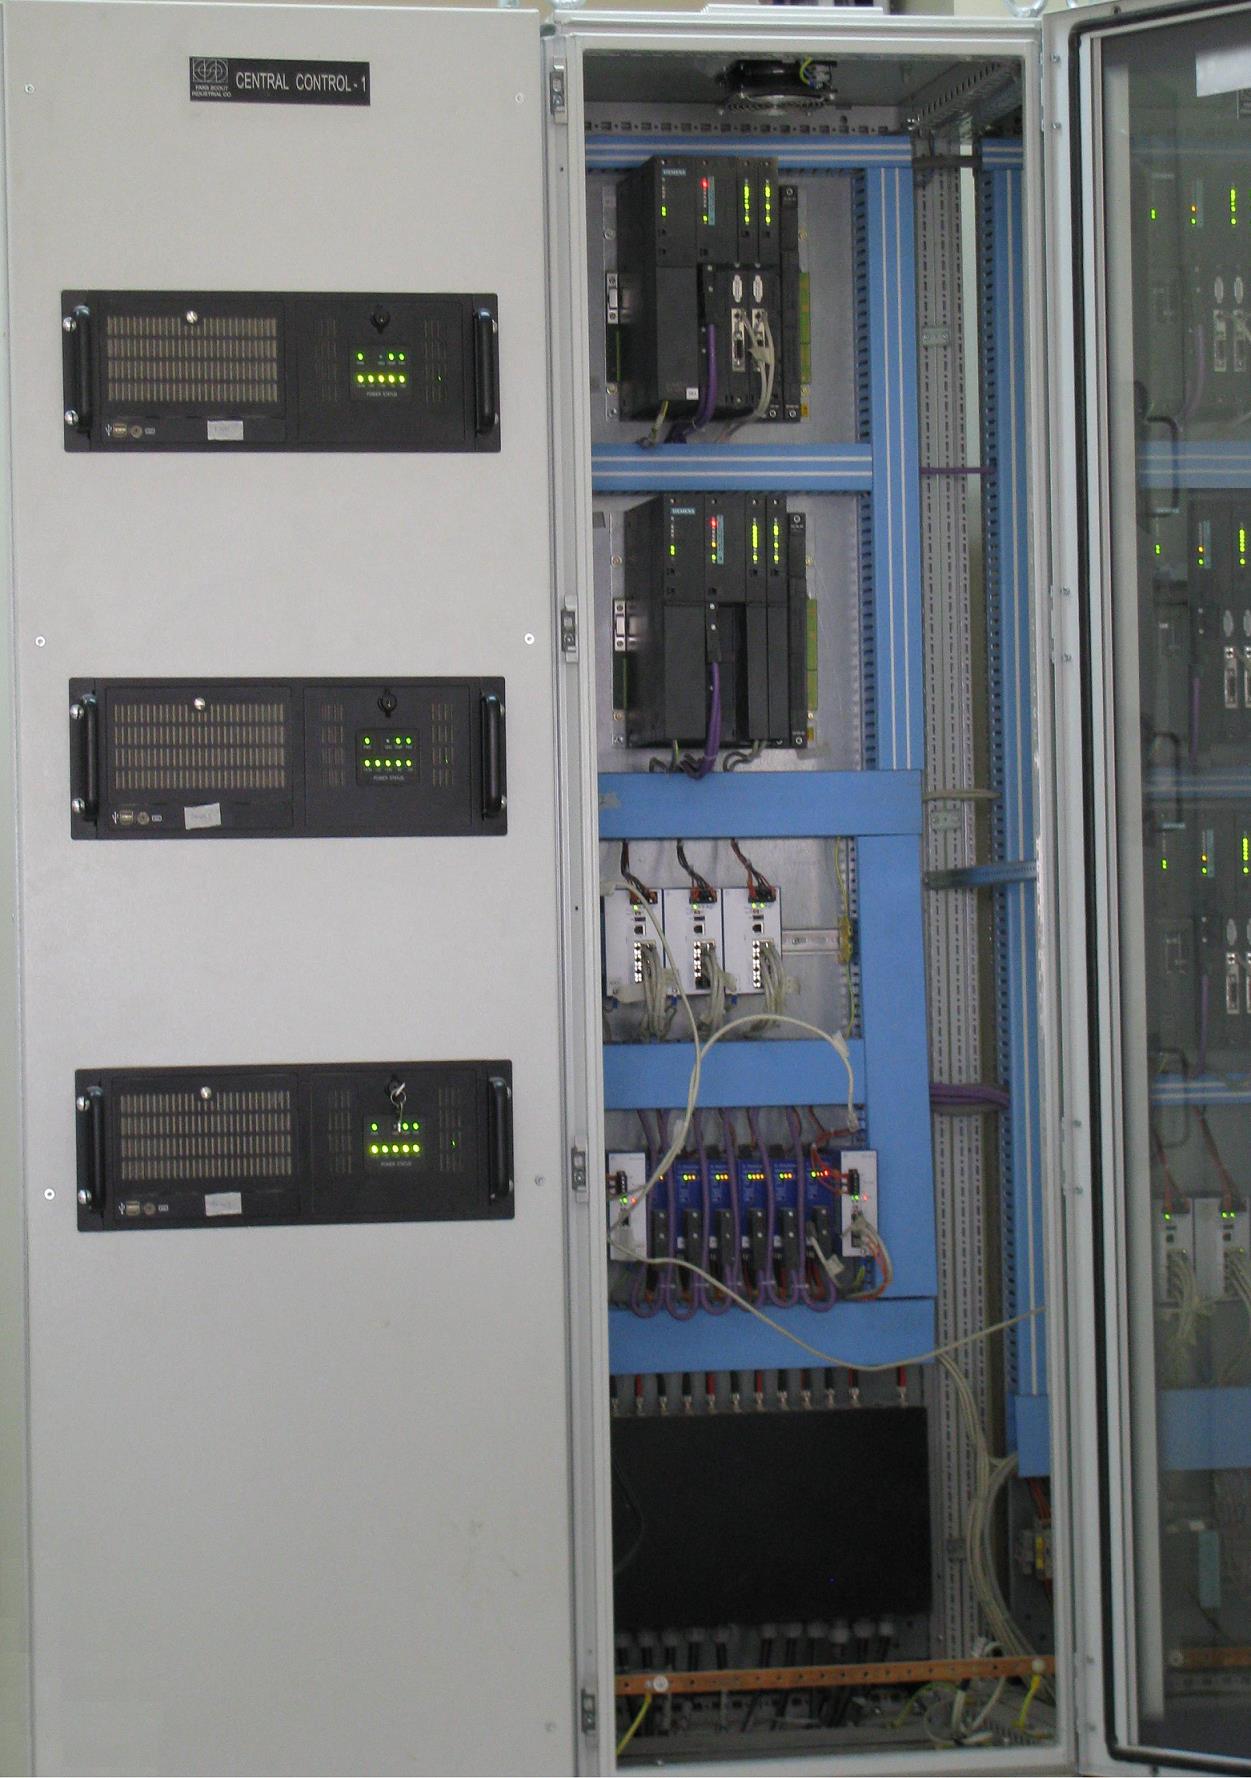 کنترلرهای مرکزی یک سیستم با حدود 5000 ورودی و خروجی